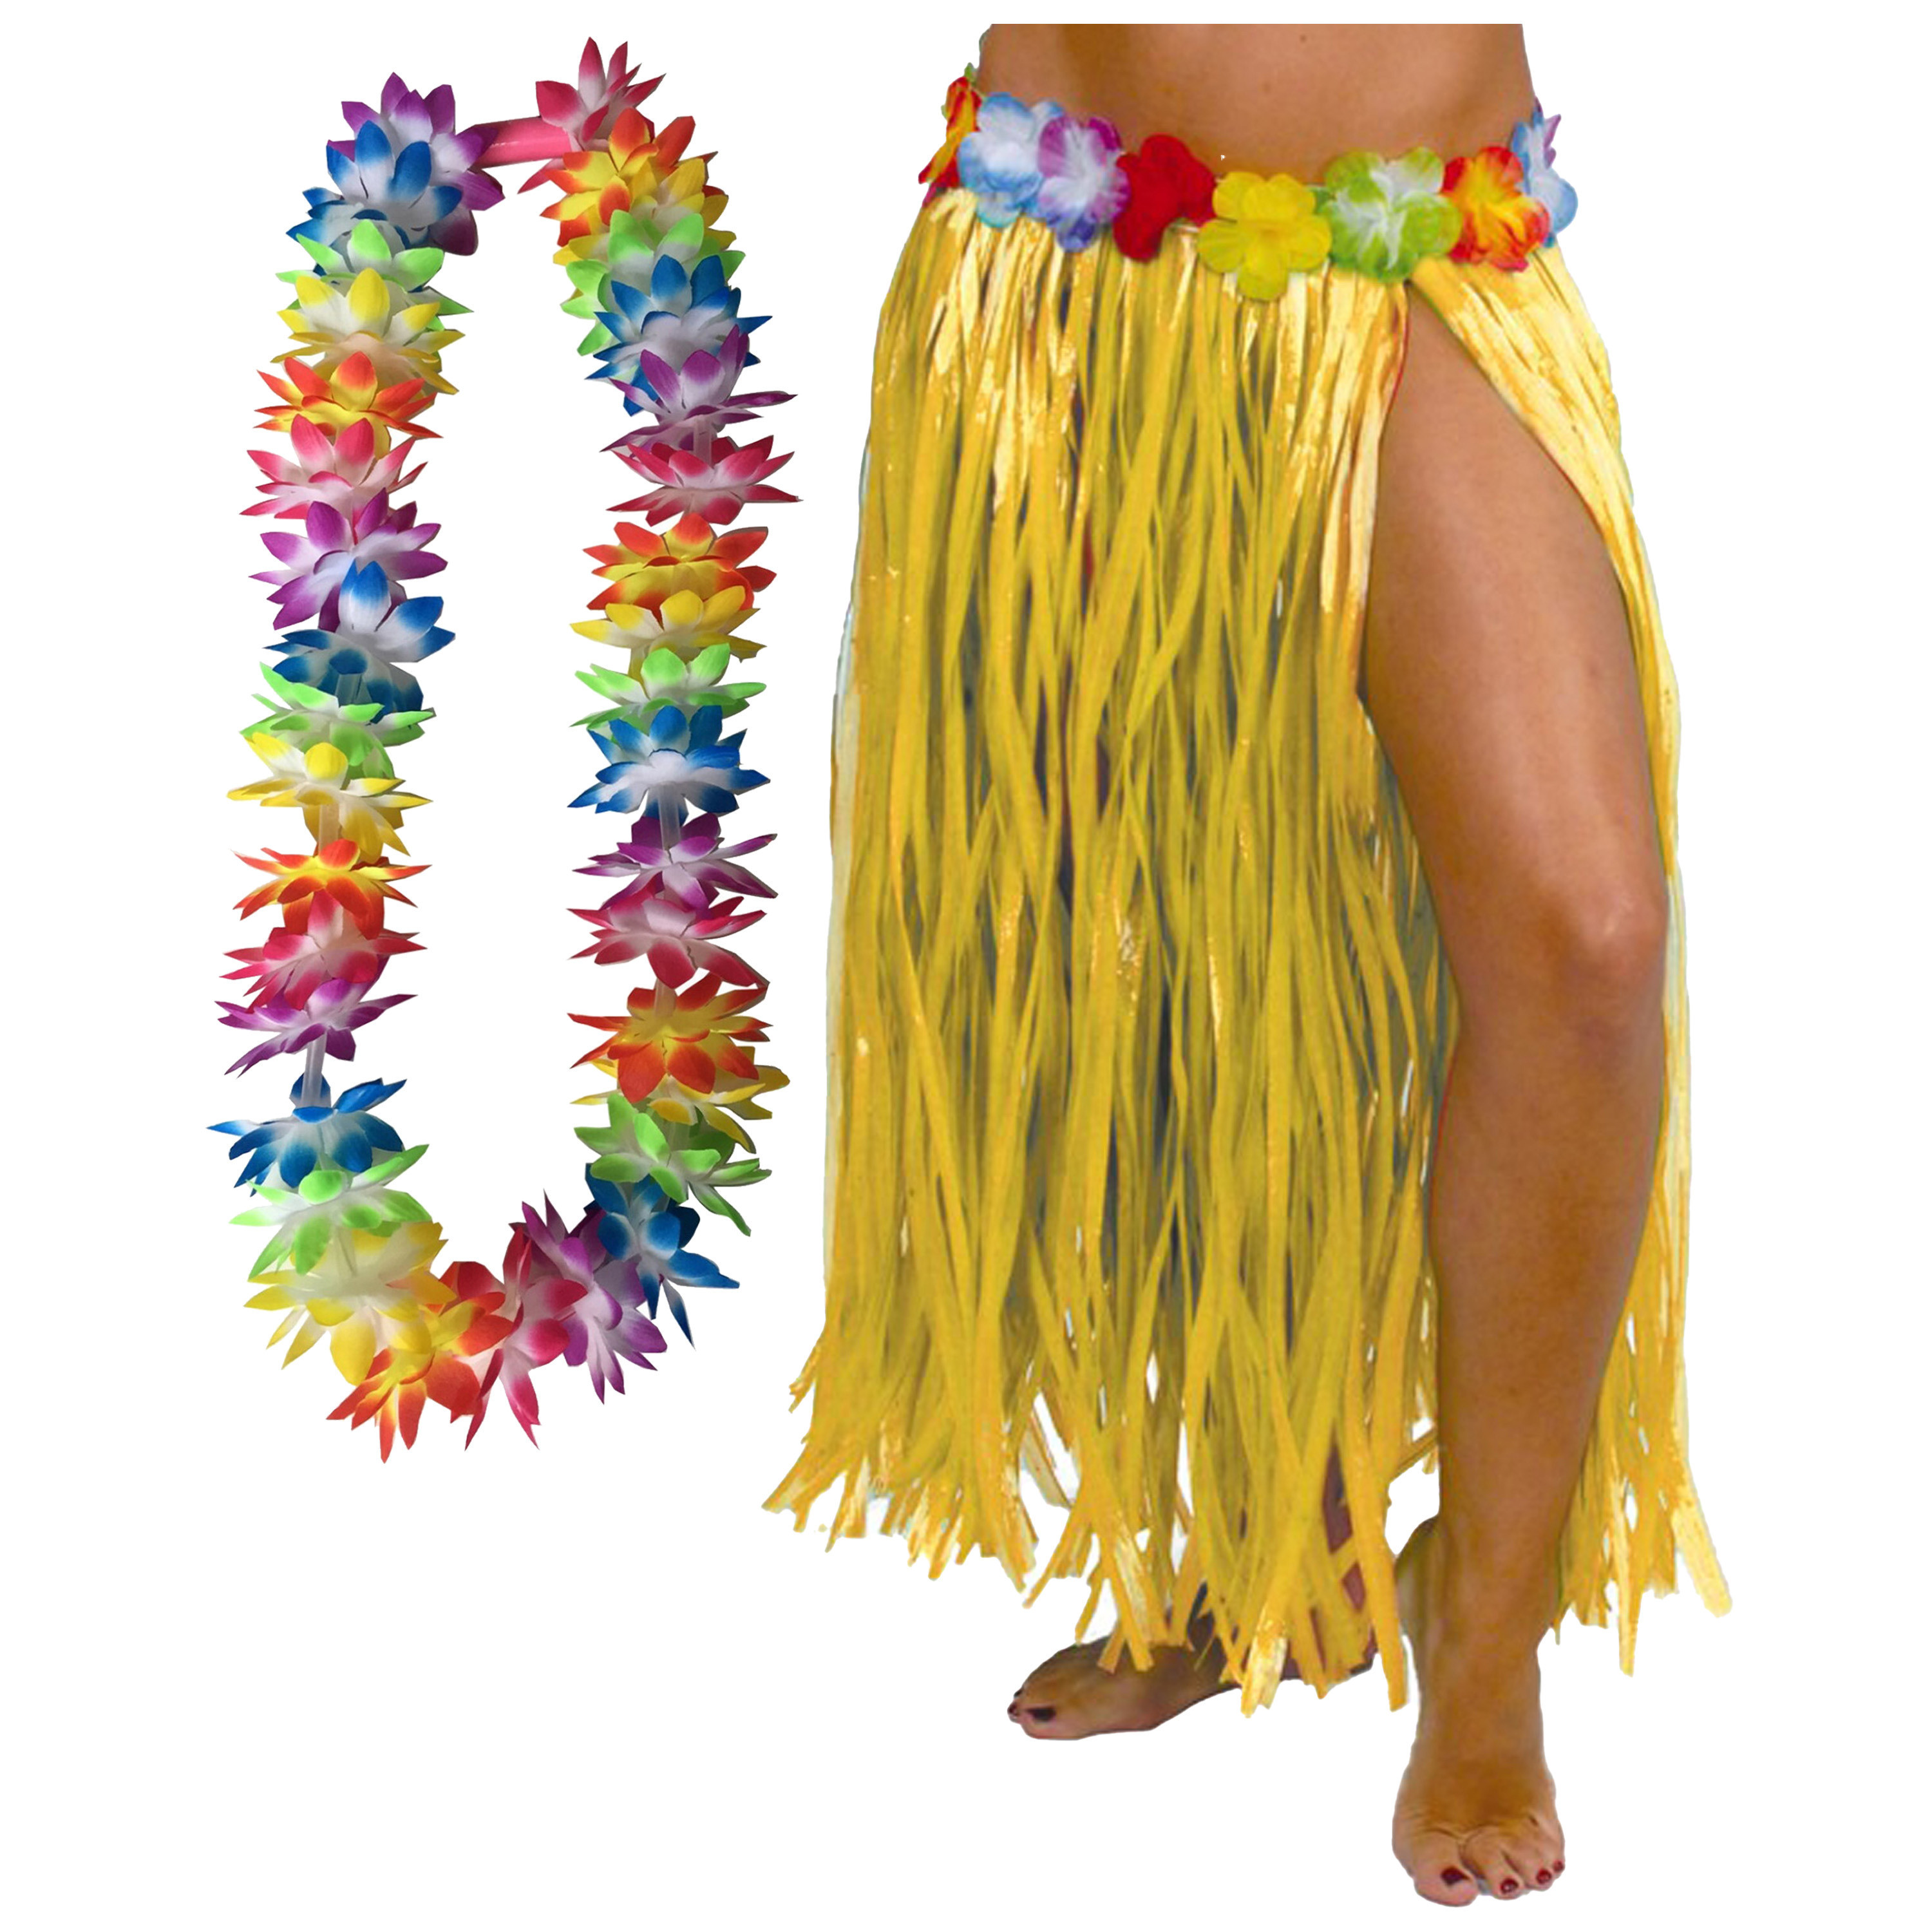 Toppers - Hawaii verkleed hoela rokje en bloemenkrans met led - volwassenen - geel - tropisch themafeest